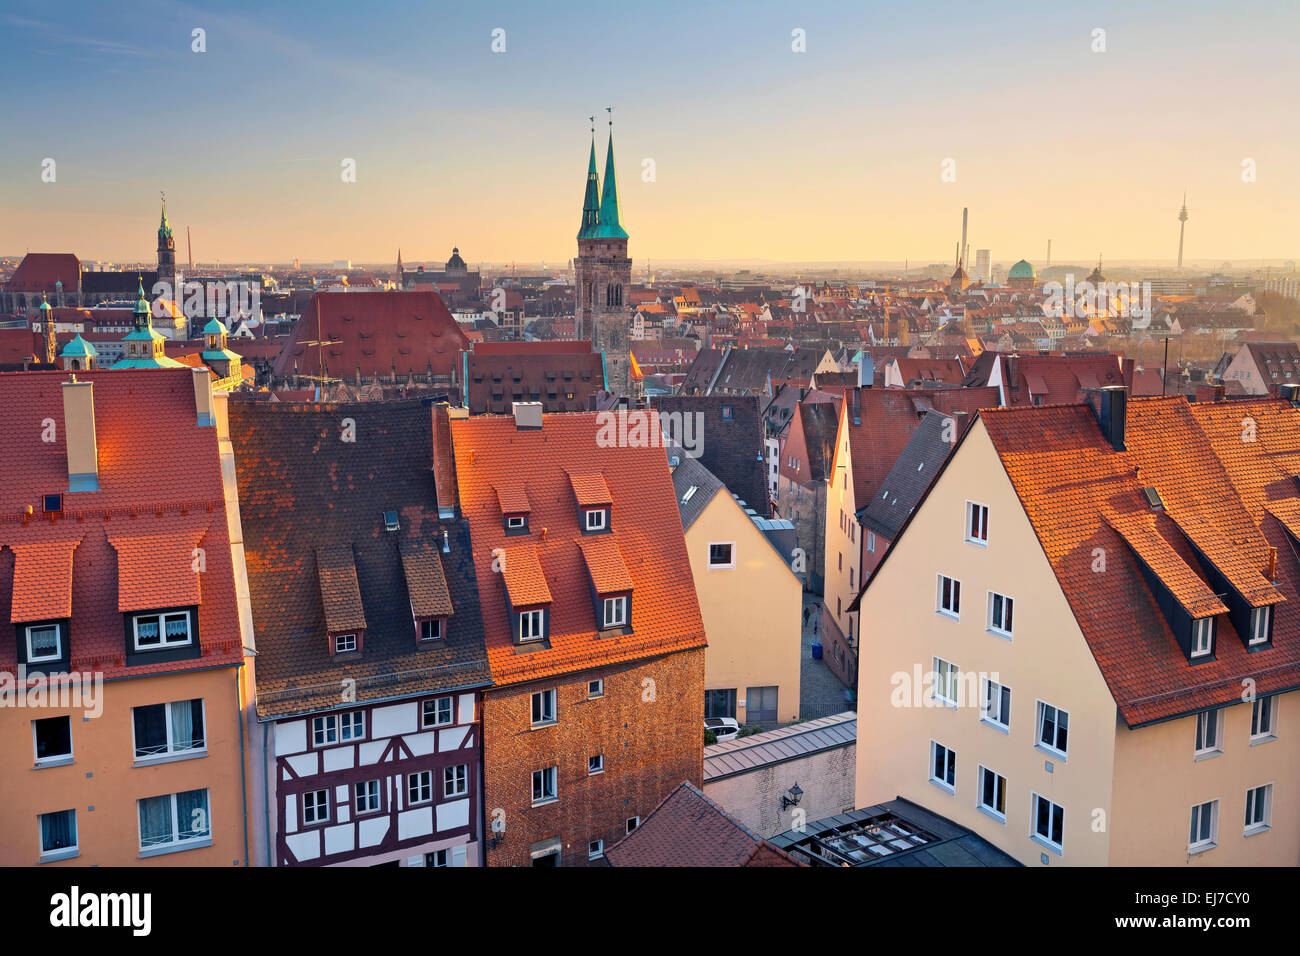 Nuremberg. Image de centre-ville historique de Nuremberg, Allemagne au coucher du soleil. Banque D'Images